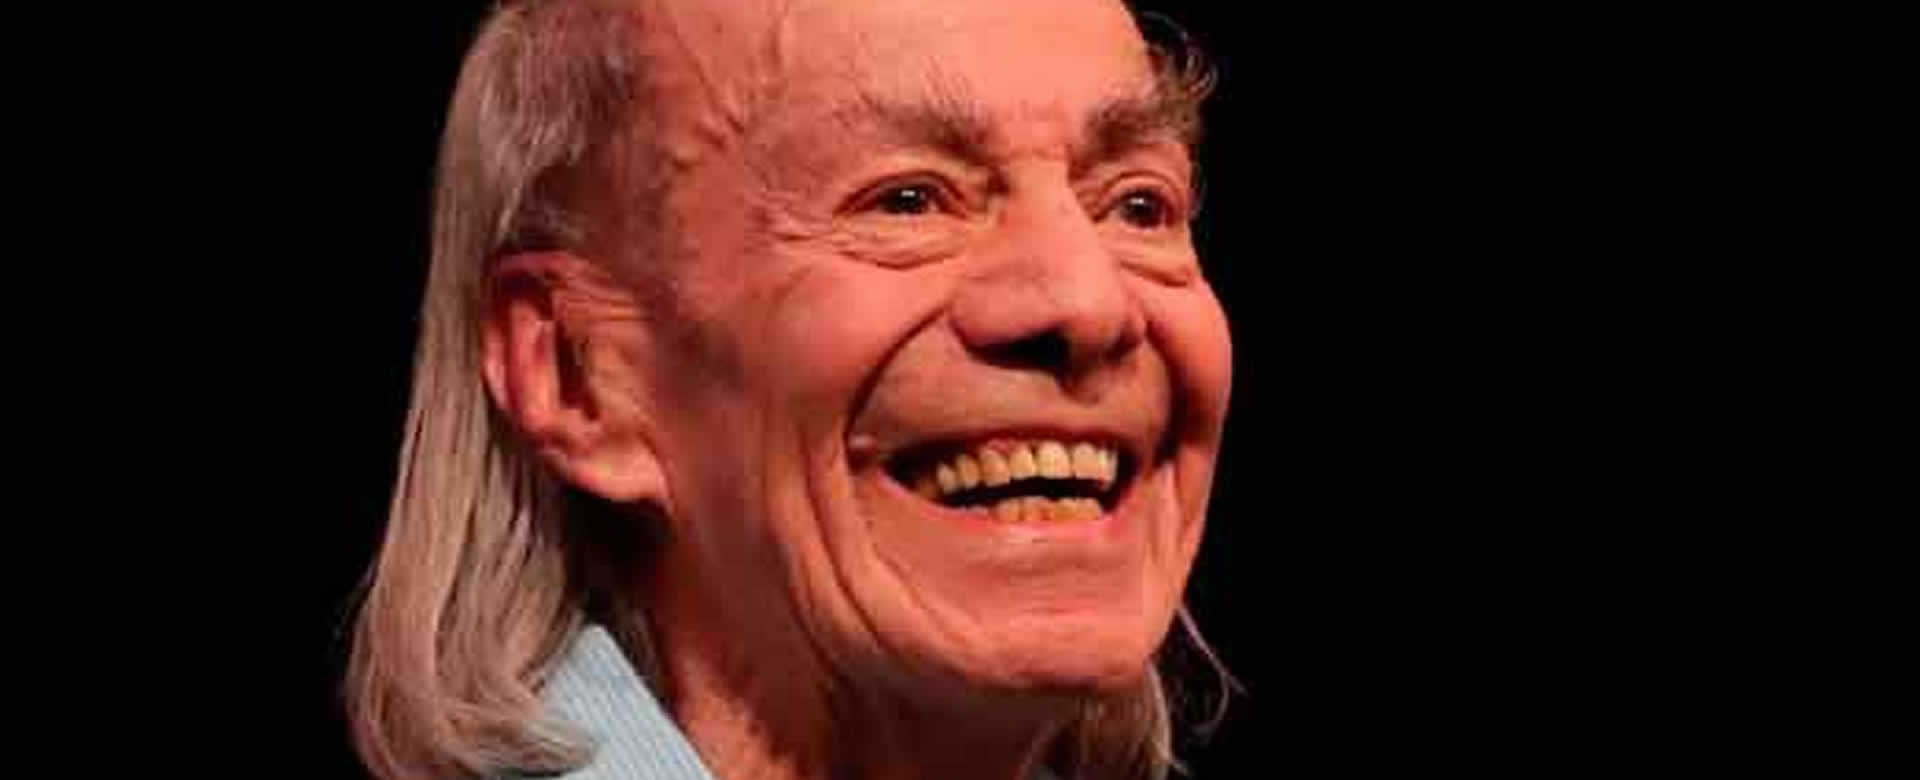 Fallece a sus 89 años el comediante mexicano "El Loco" Valdés